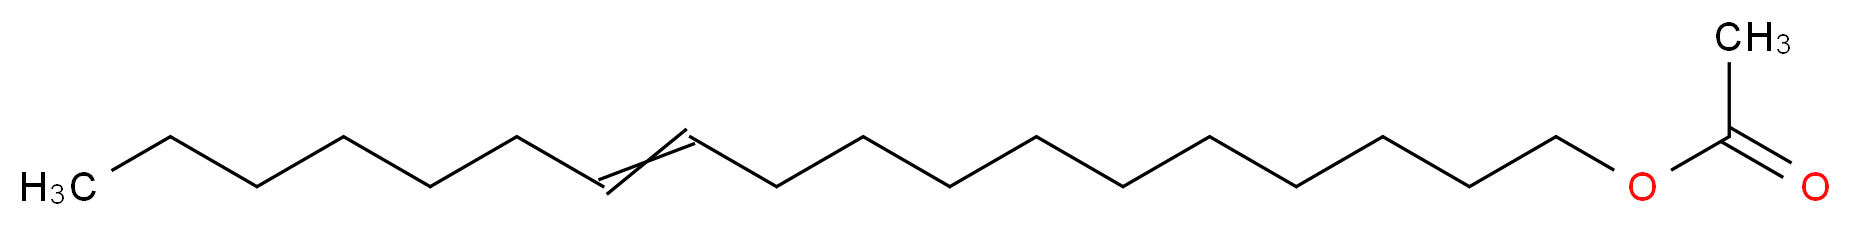 octadec-11-en-1-yl acetate_分子结构_CAS_6186-98-7